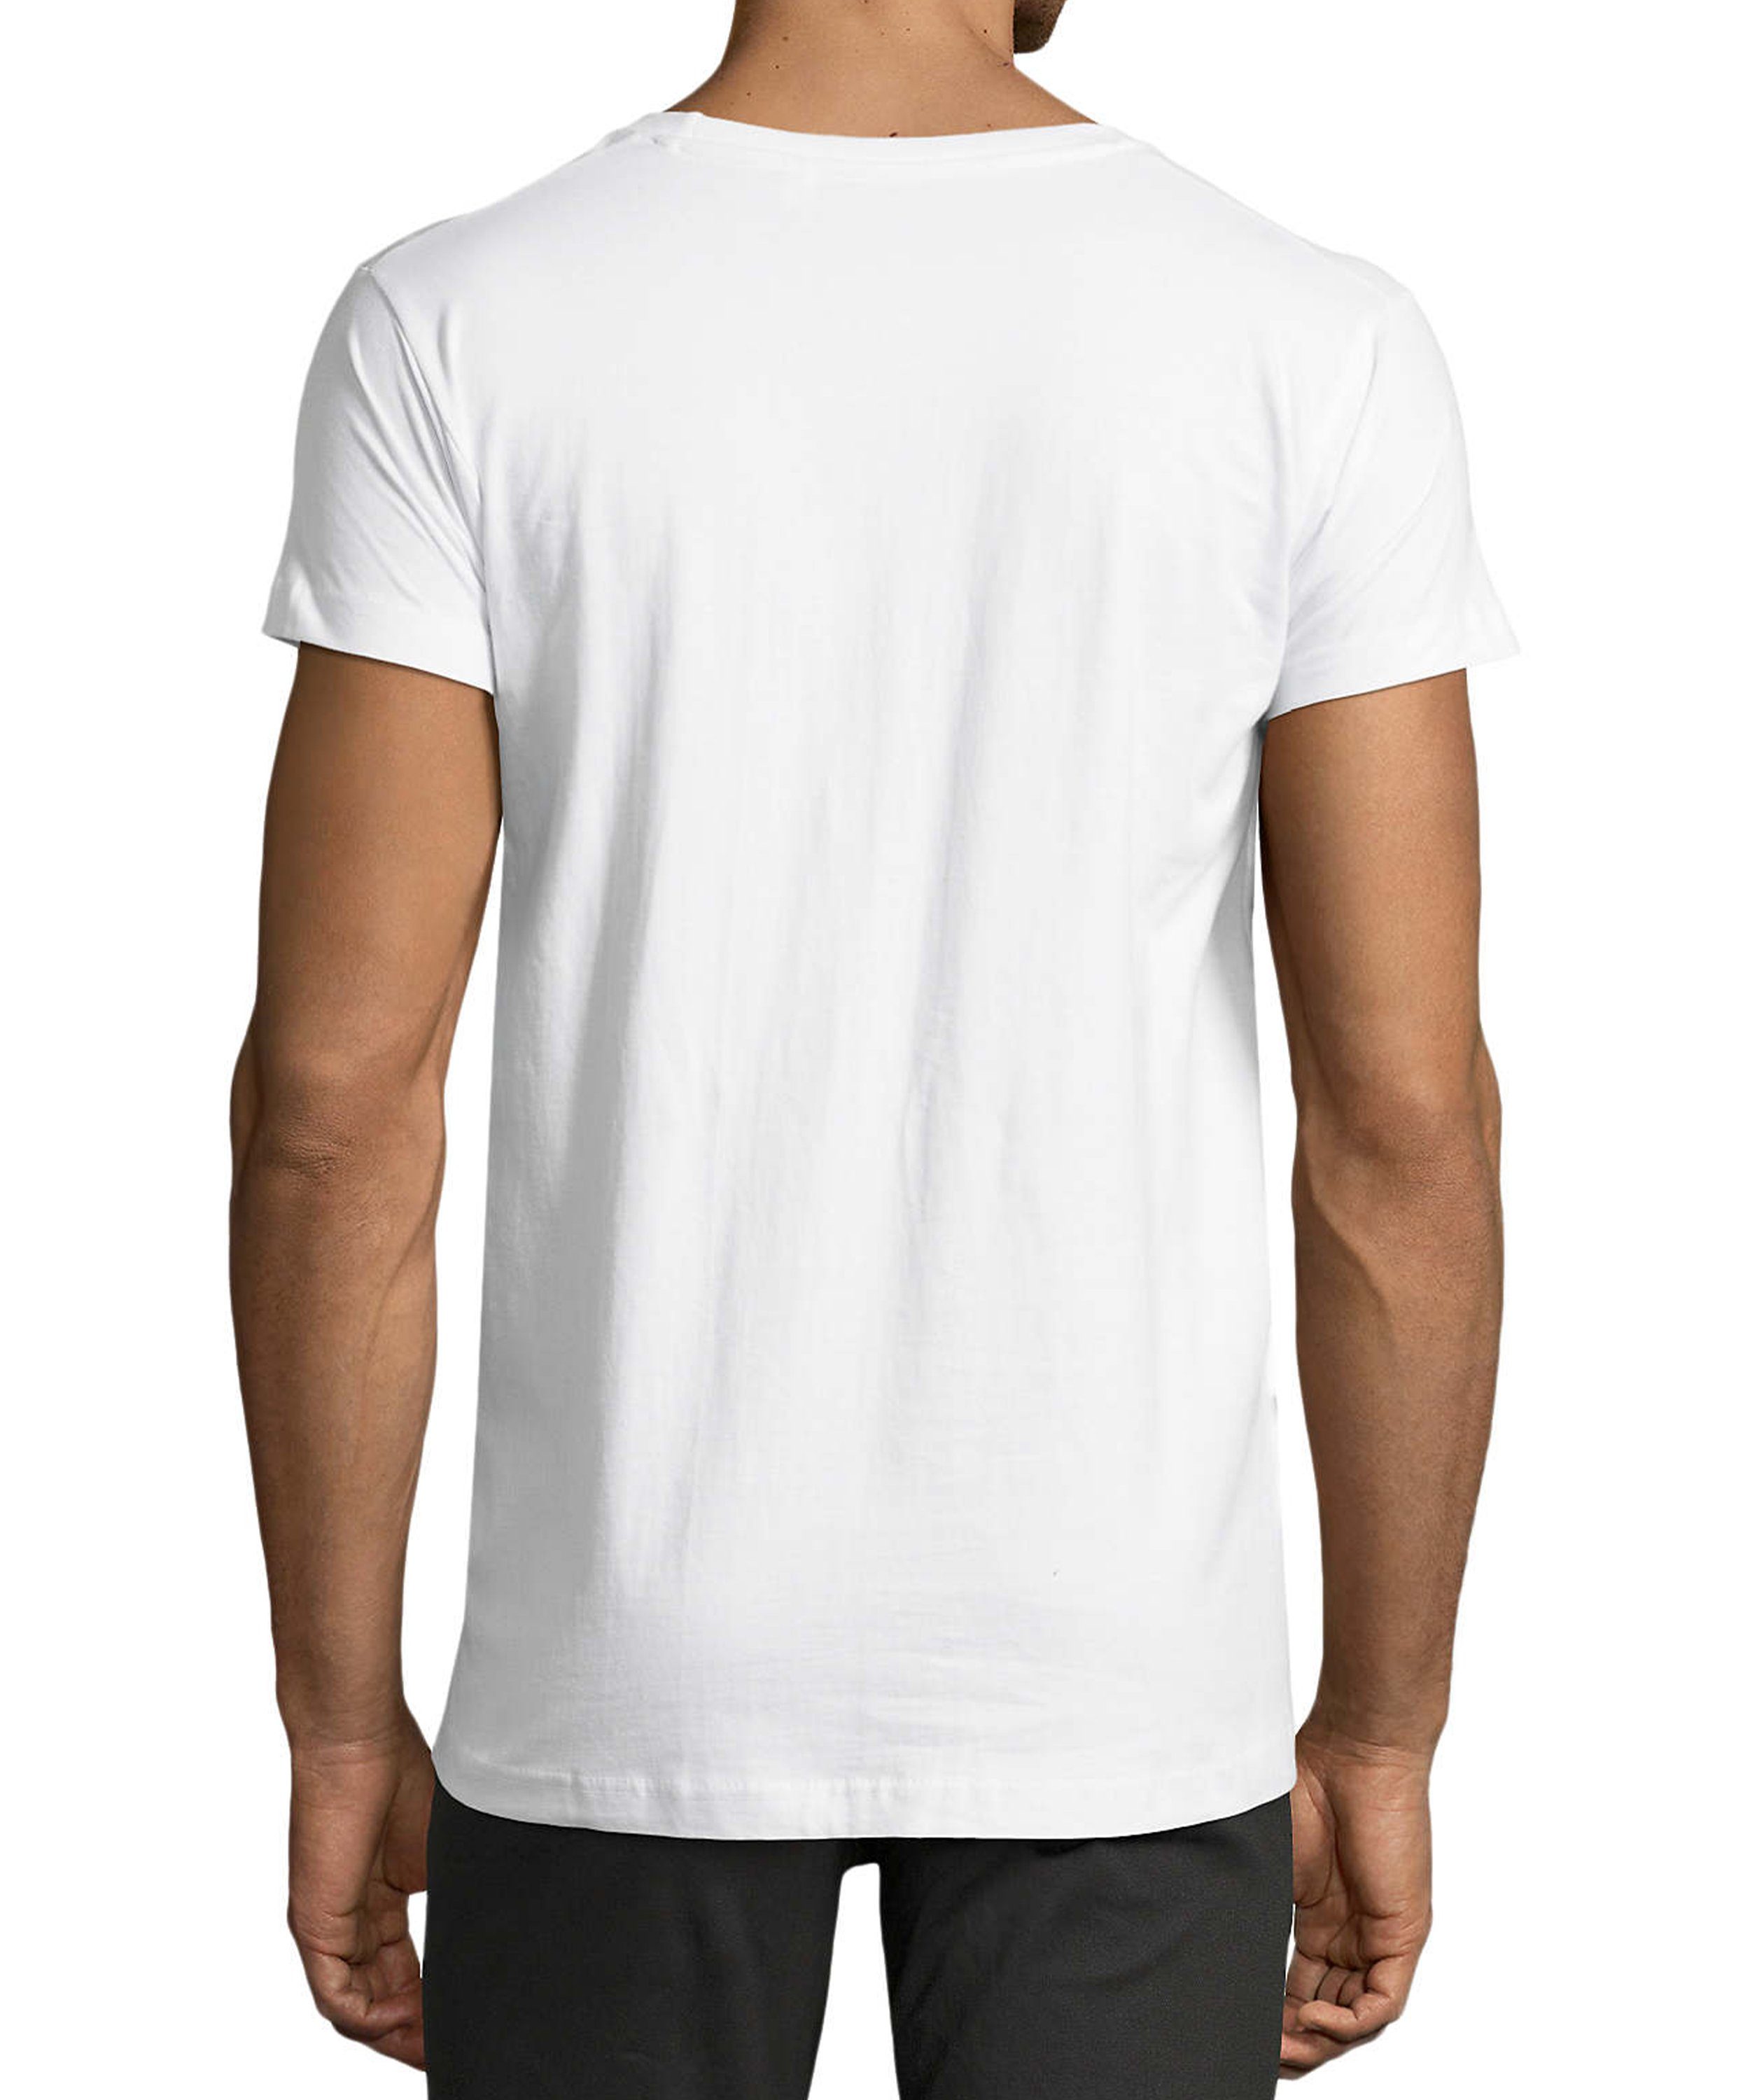 Trinkshirt weiss Baumwollshirt Regular Herren Oktoberfest mit - Fit, Party Shirt MyDesign24 T-Shirt T-Shirt Aufdruck i323